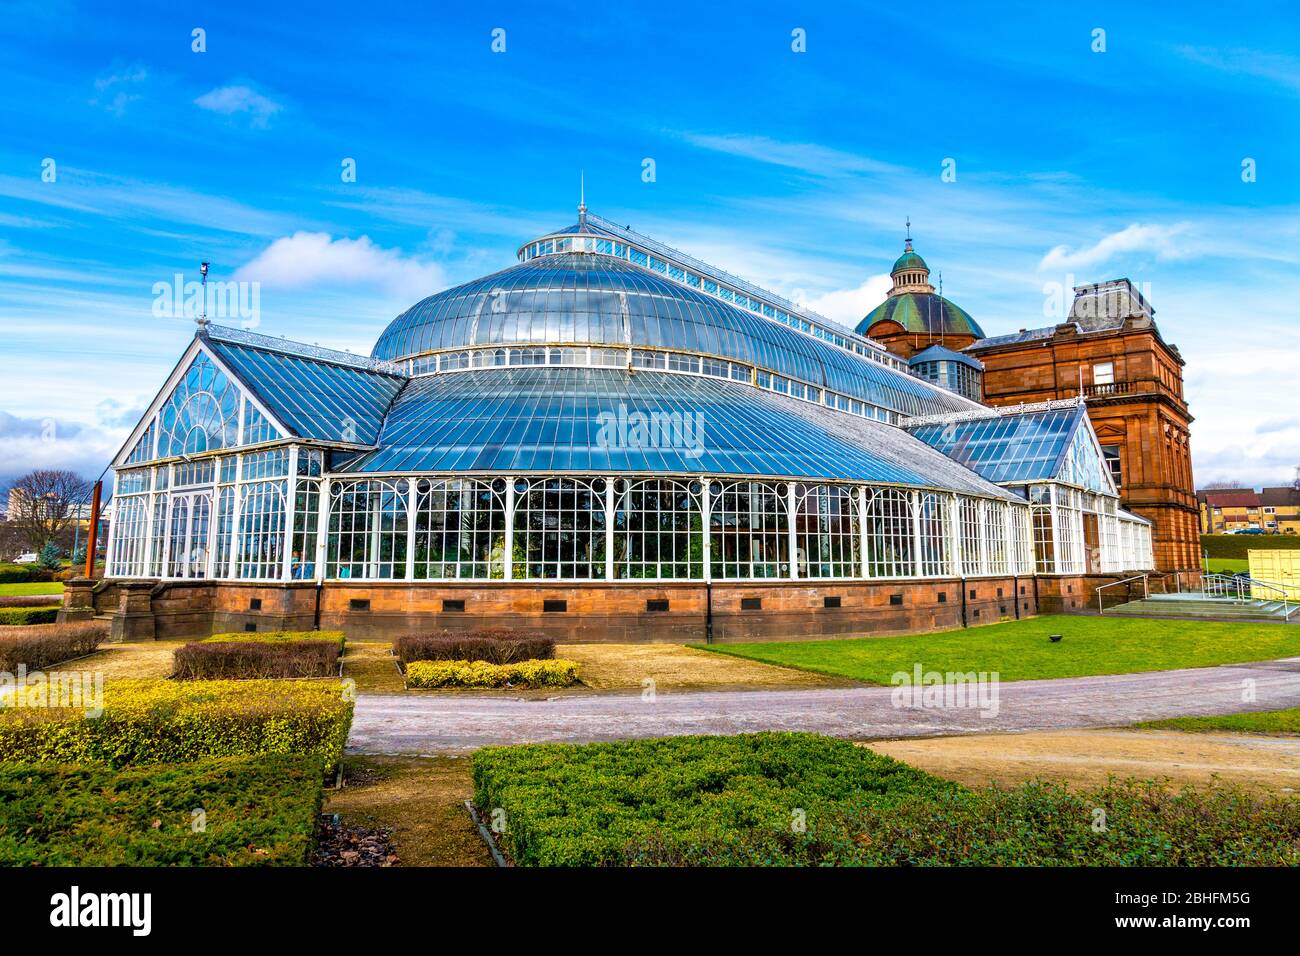 Extérieur du palais du peuple et du bâtiment Winter Gardens abritant des plantes exotiques, Glasgow, Écosse, Royaume-Uni Banque D'Images